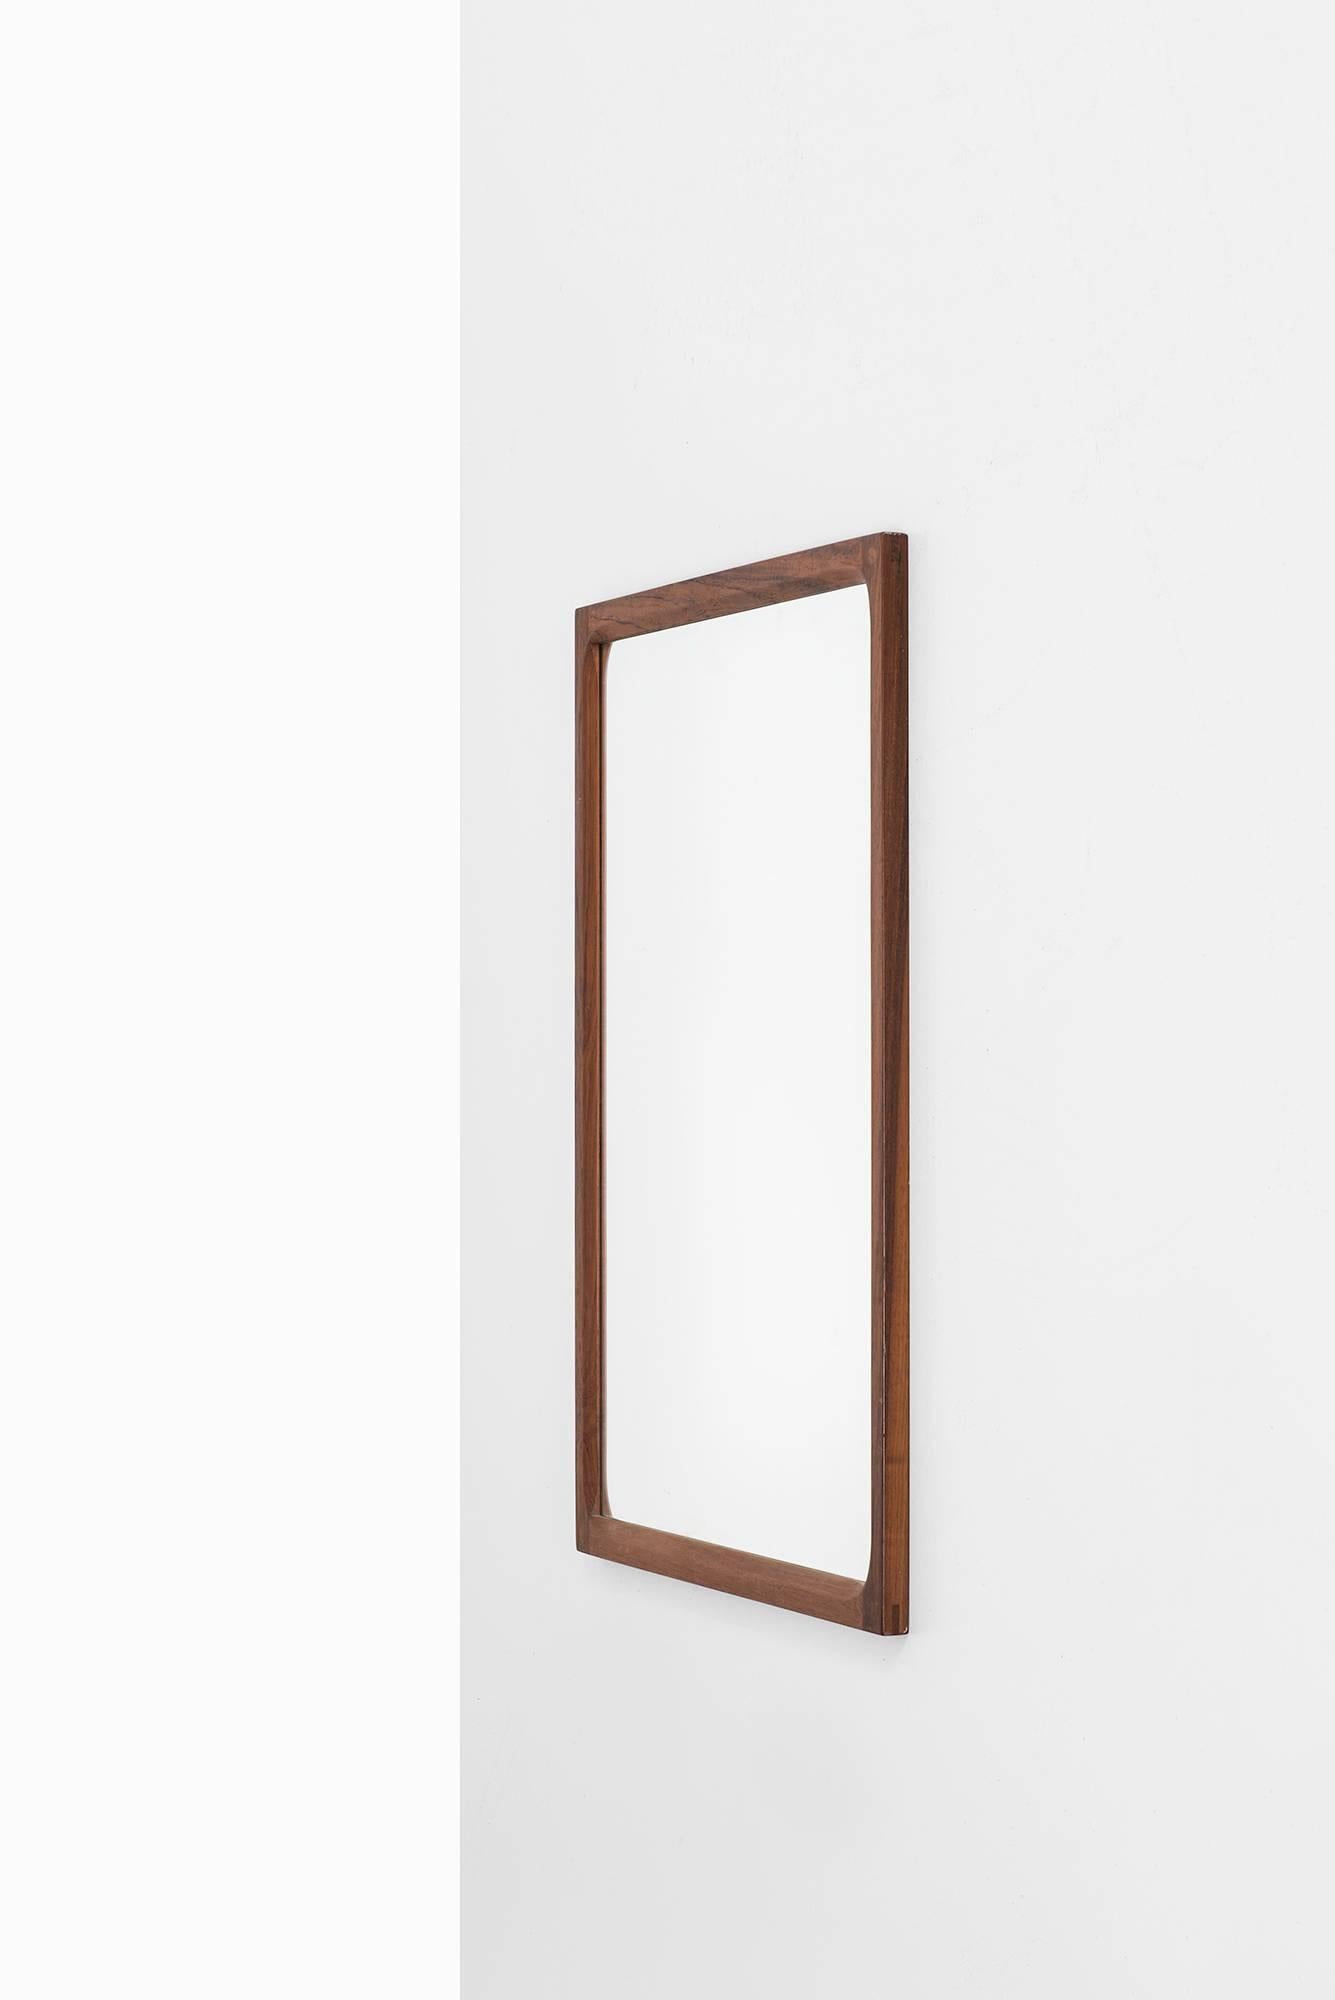 Spiegel aus Palisanderholz, entworfen von Aksel Kjersgaard. Produziert von Odder in Dänemark.